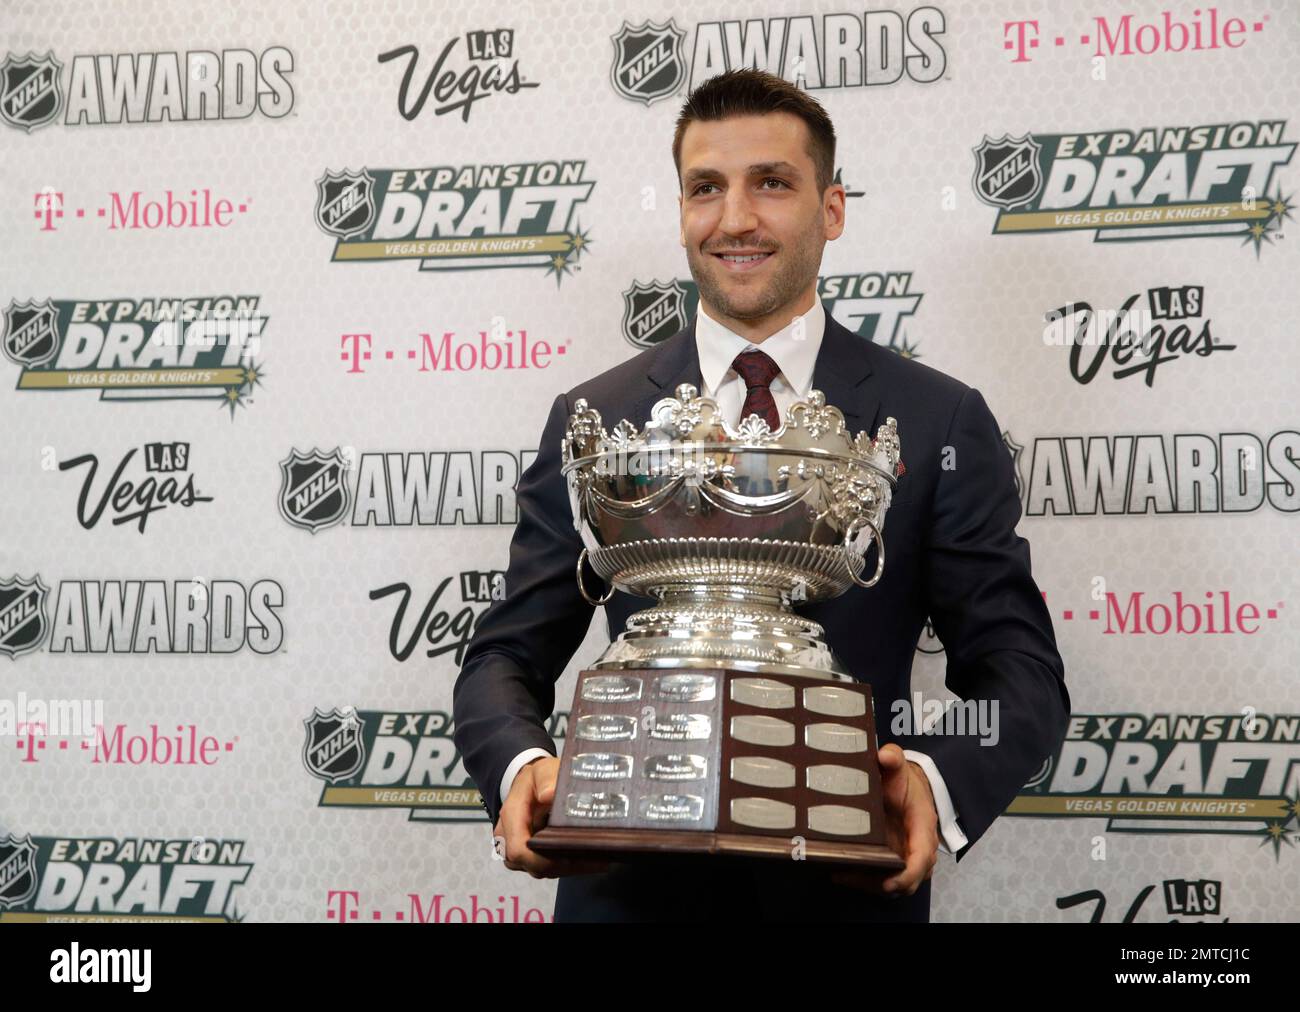 NHL Awards: Boston Bruins' Patrice Bergeron, Zdeno Chara chasing